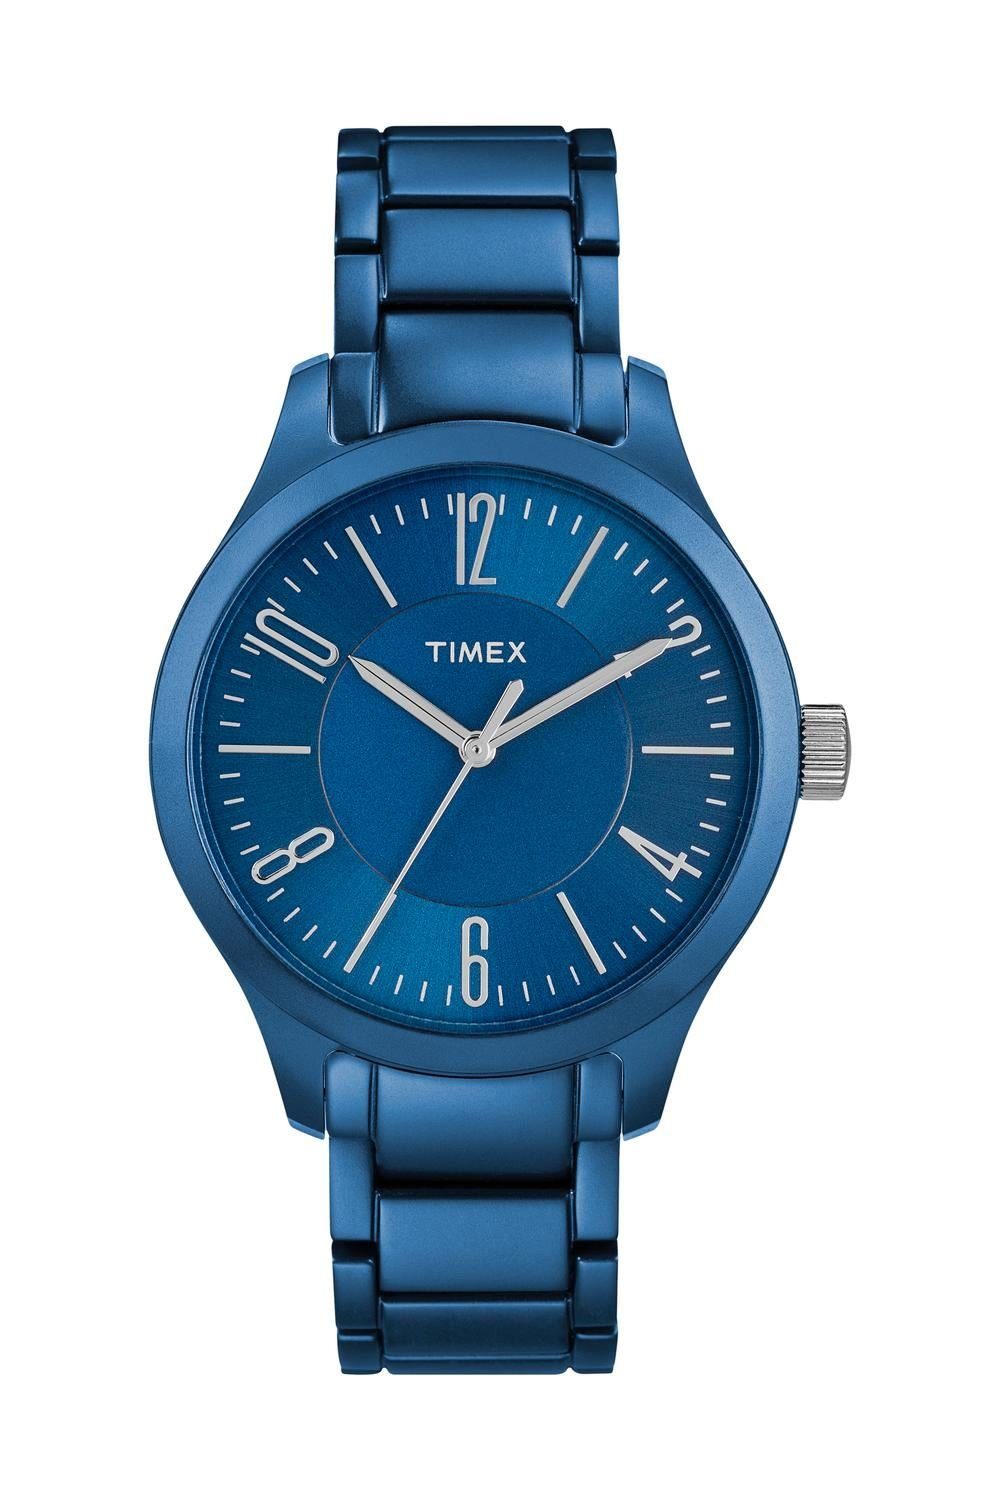 Timex® Originals Quarzuhr T2P105CC, Leicht durch Aluminiumgehäuse und Aluminiumarmband